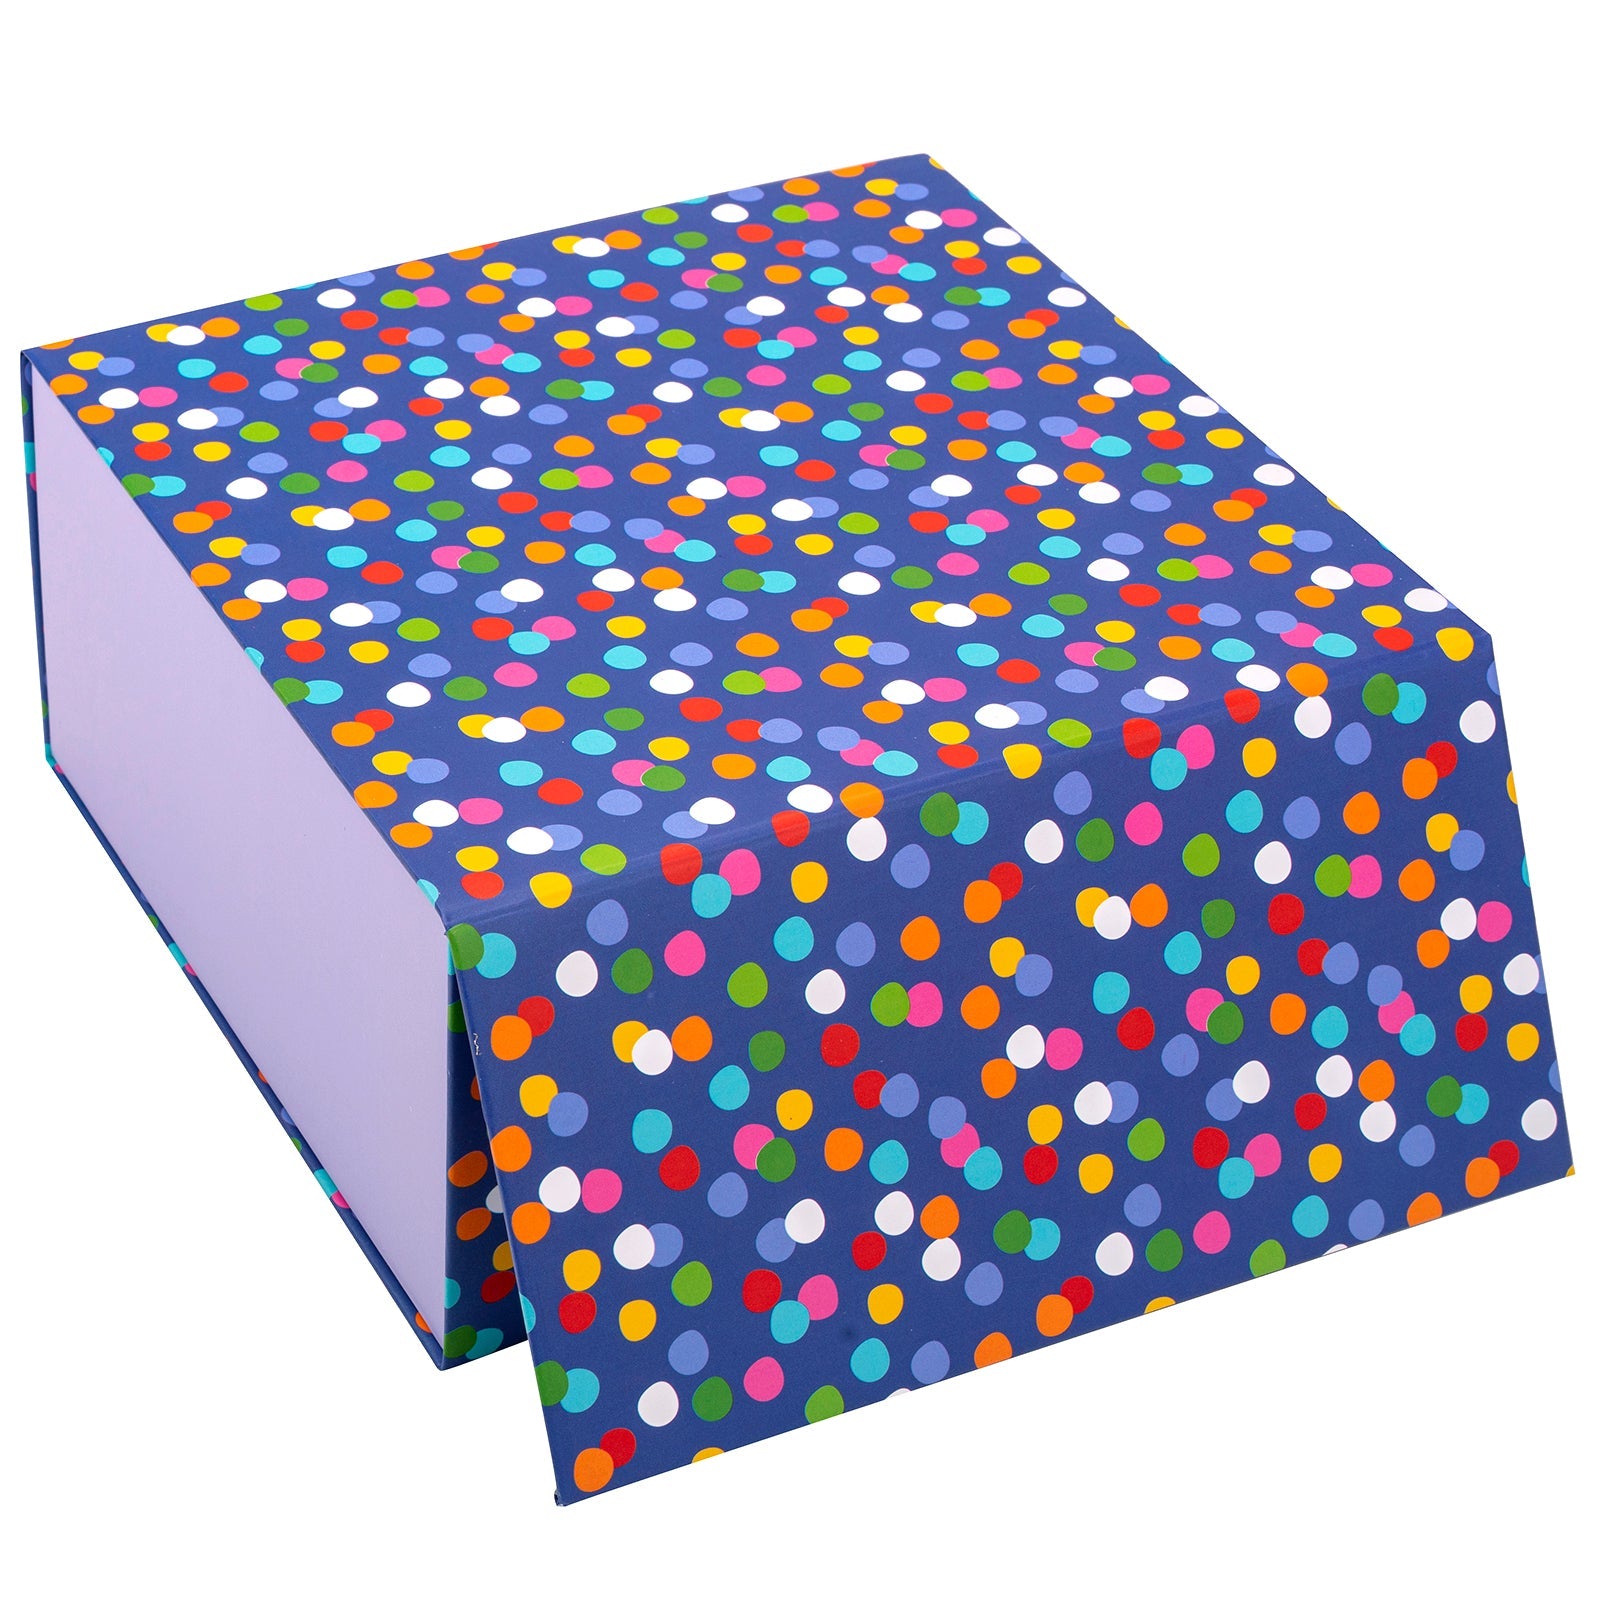 8x8x4 inch Magnetic Closure Box Multicolor Dots